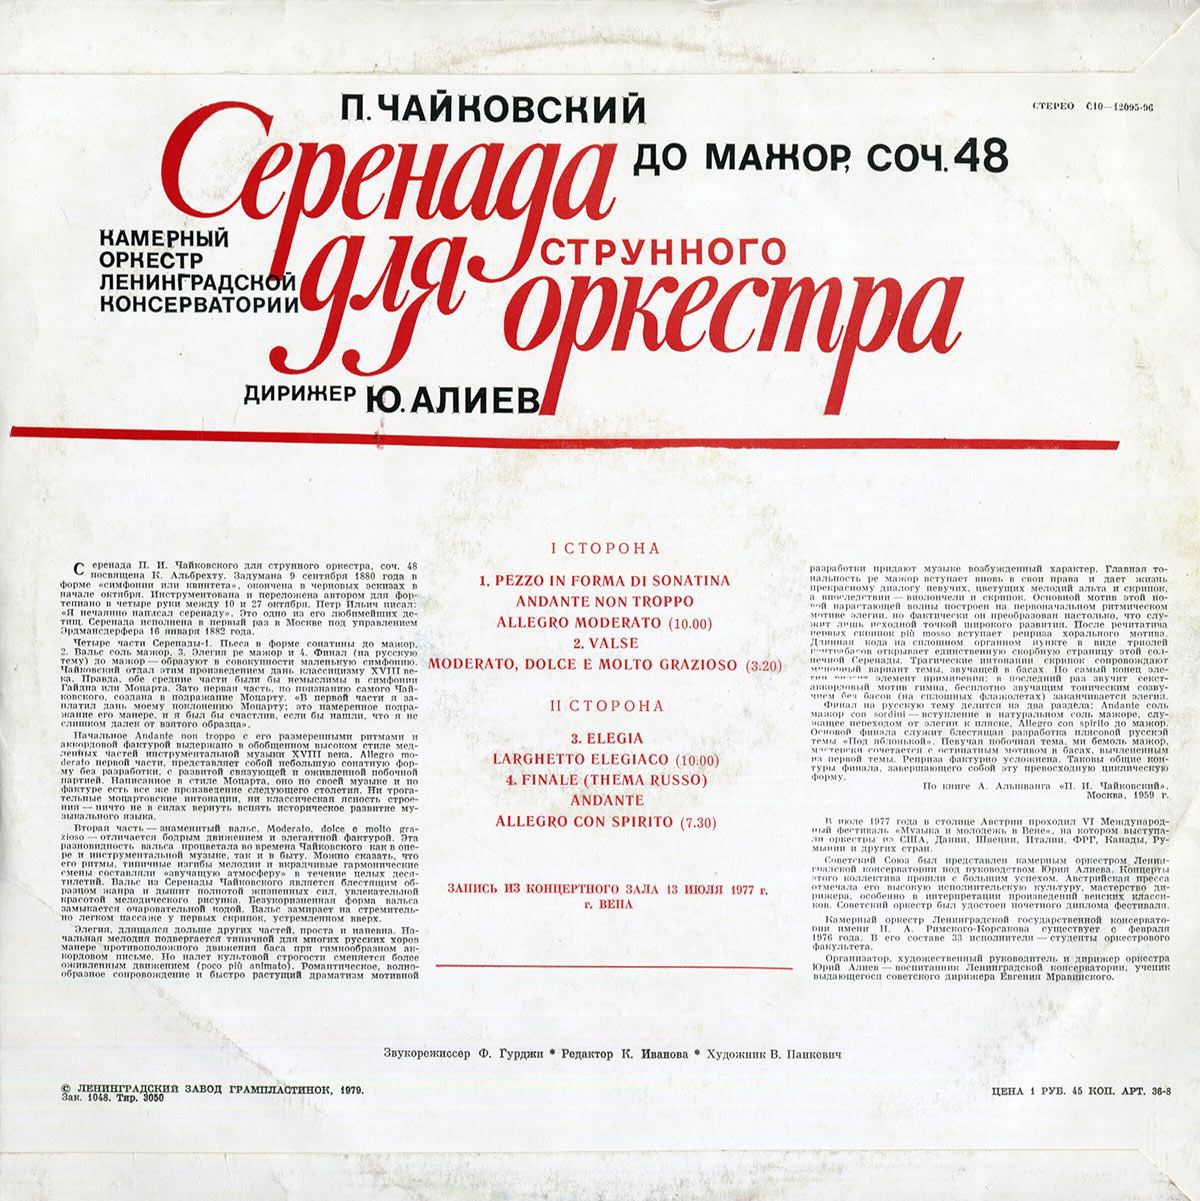 П. ЧАЙКОВСКИЙ (1840—1893): Серенада для струнного оркестра до мажор, соч. 48